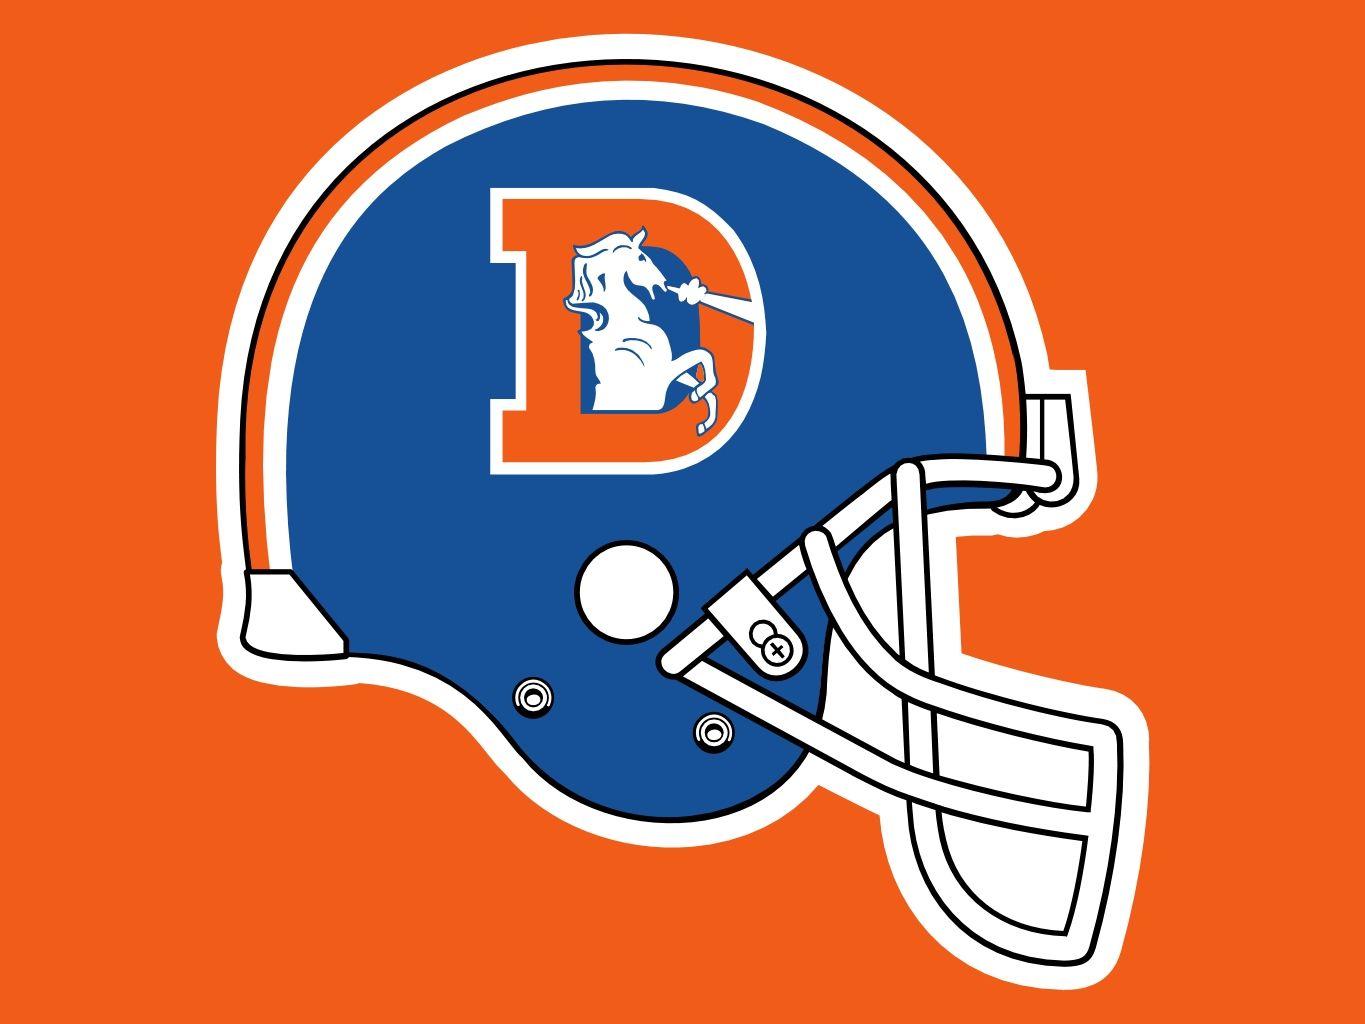 Broncos Old Logo - Denver Broncos Old Logo Helmets free image